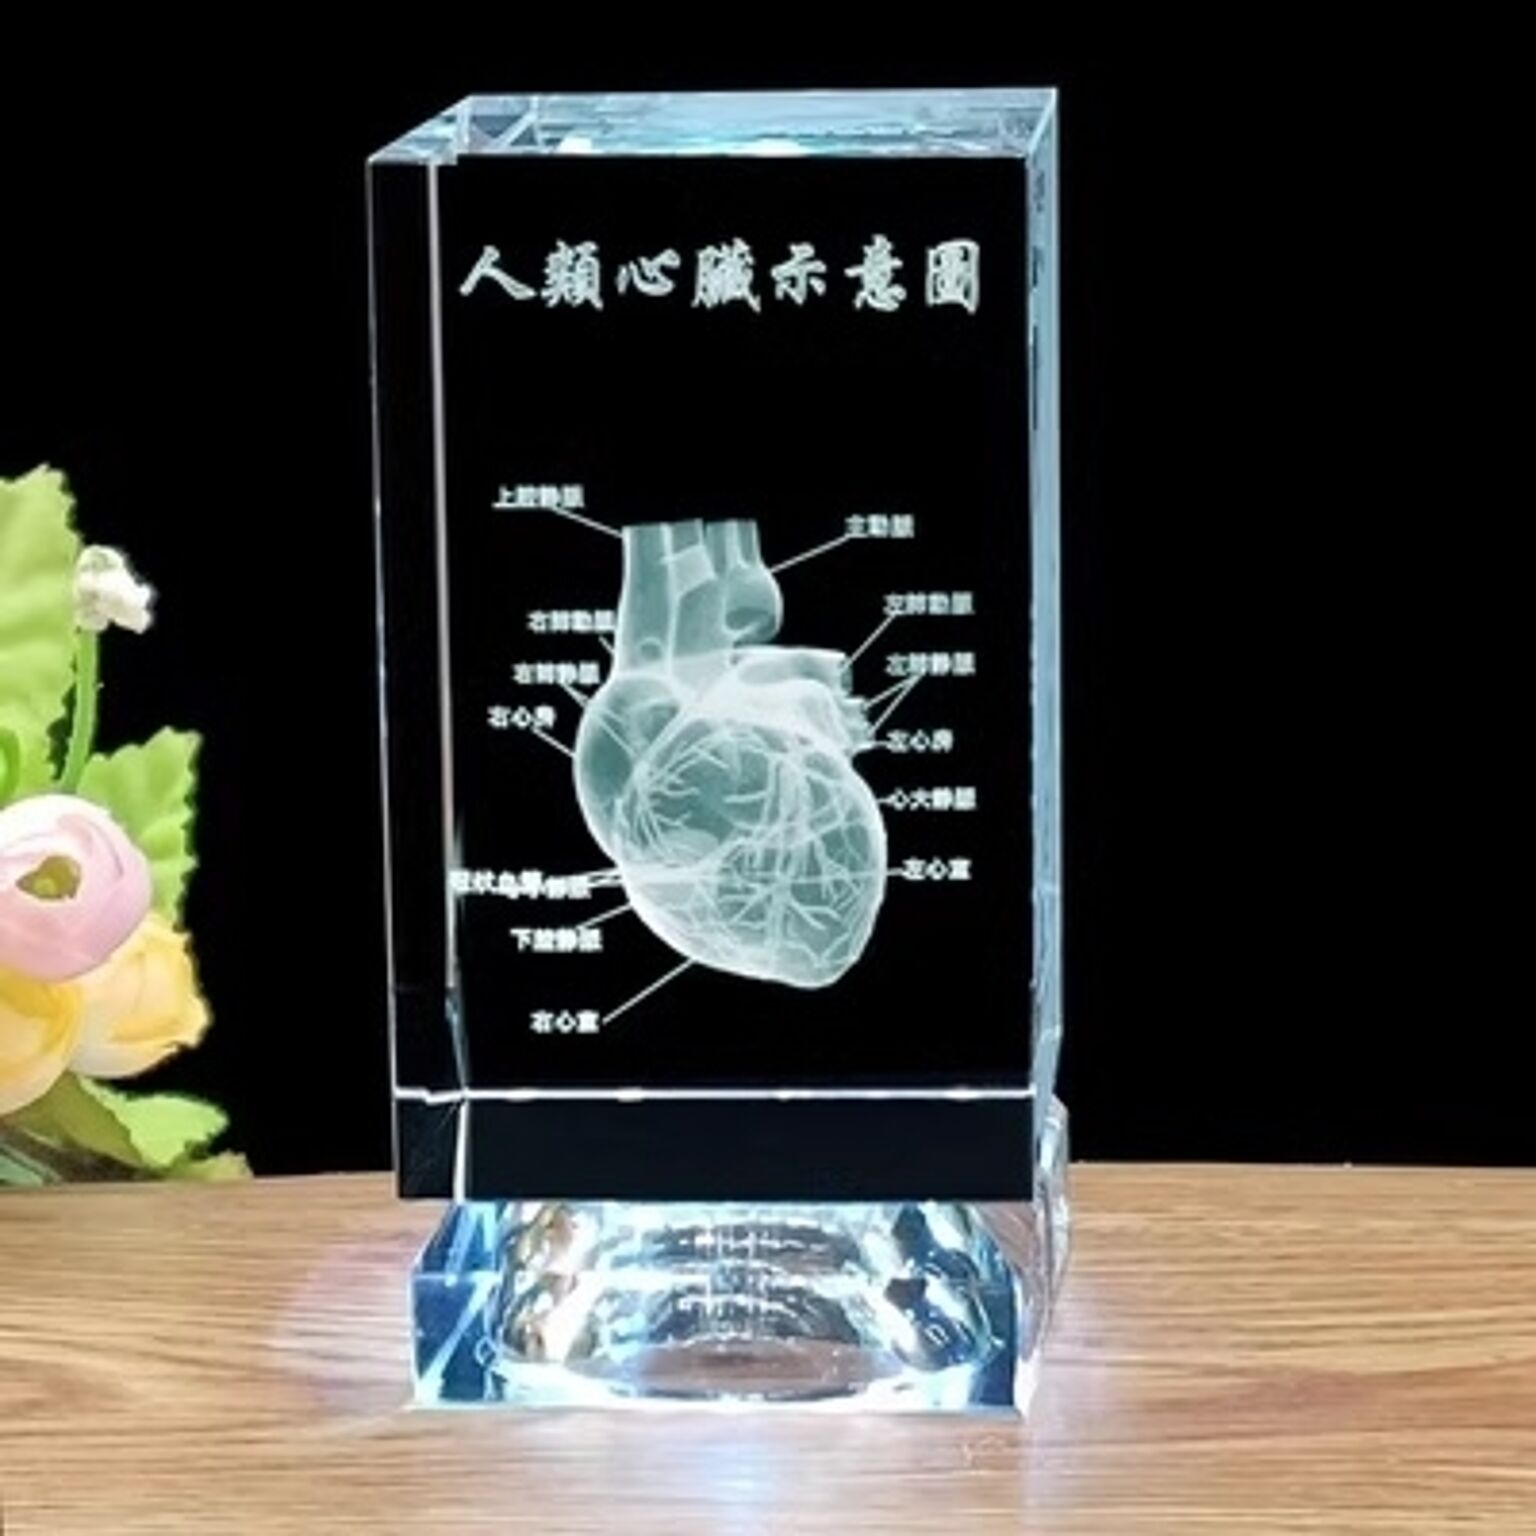 置物 クリスタル 心臓 レーザー 彫り 3D オブジェ インテリア クリスタルアート イルミネーション LED台座 ライトアップ 照明 玄関 卓上 テーブル